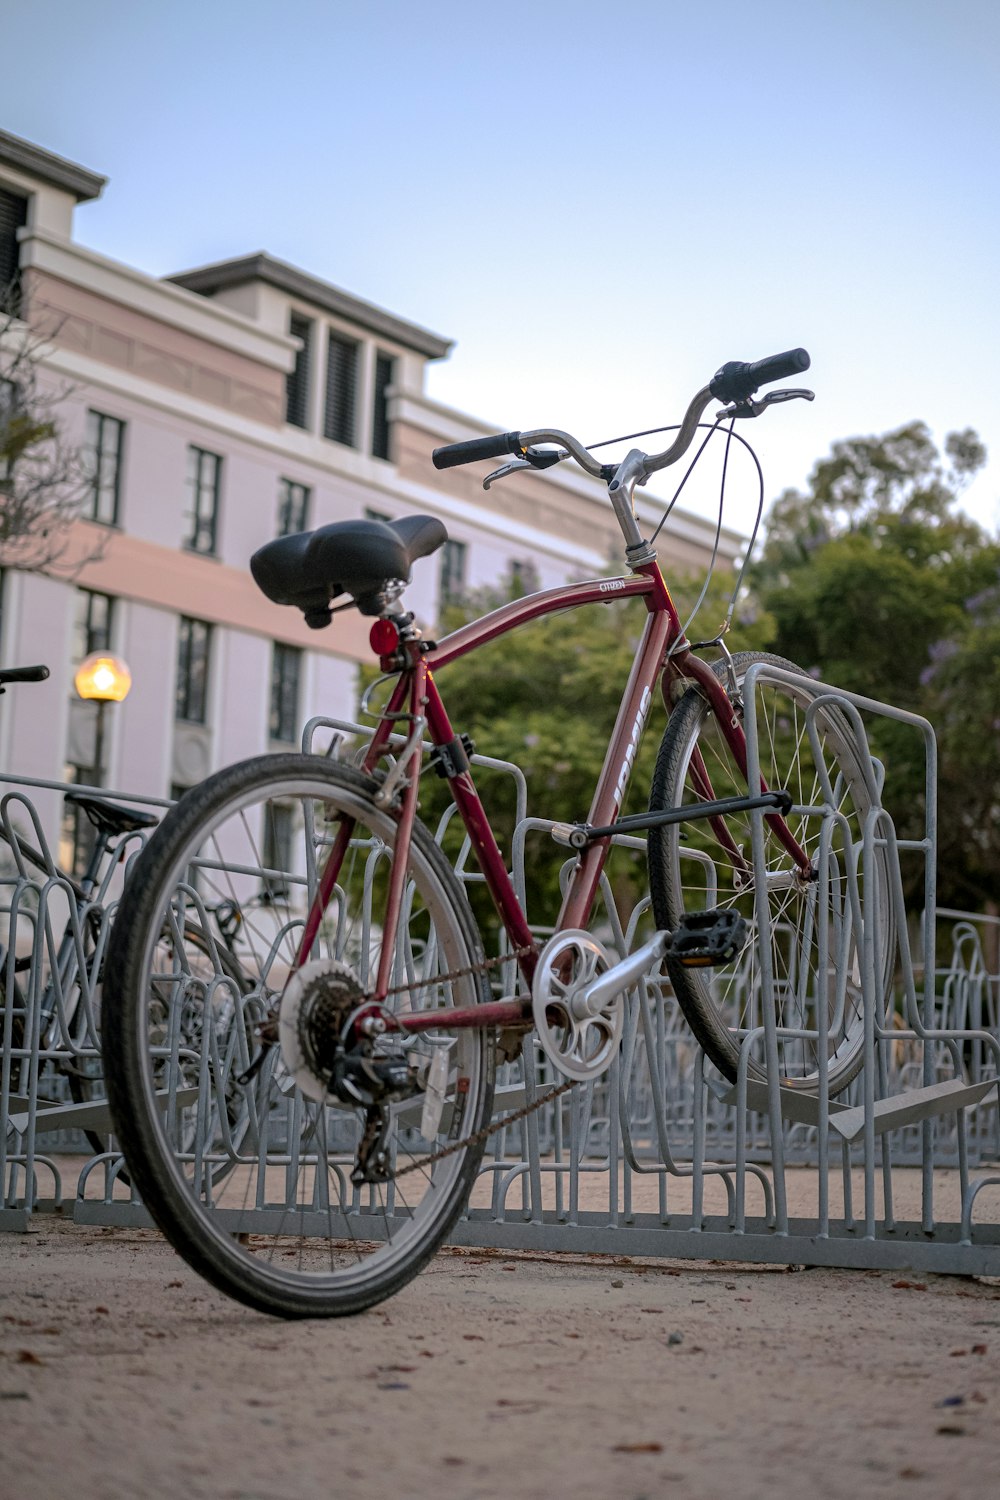 Bicicleta roja de la ciudad estacionada junto a la valla de metal blanca durante el día